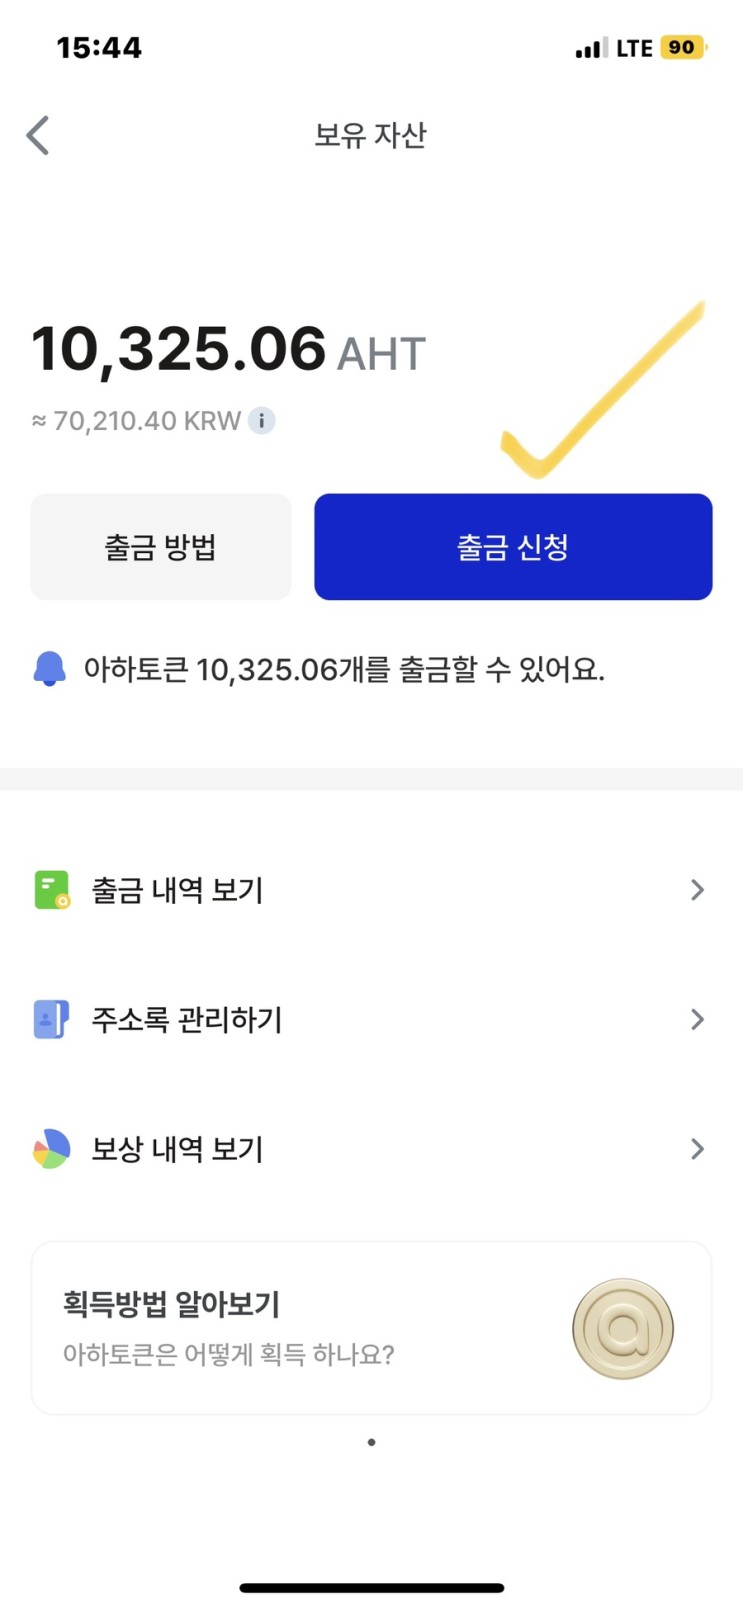 아하토큰 멤버십 아하코인 AHT 현금화 방법 (업비트 출금 수수료 1,000원)